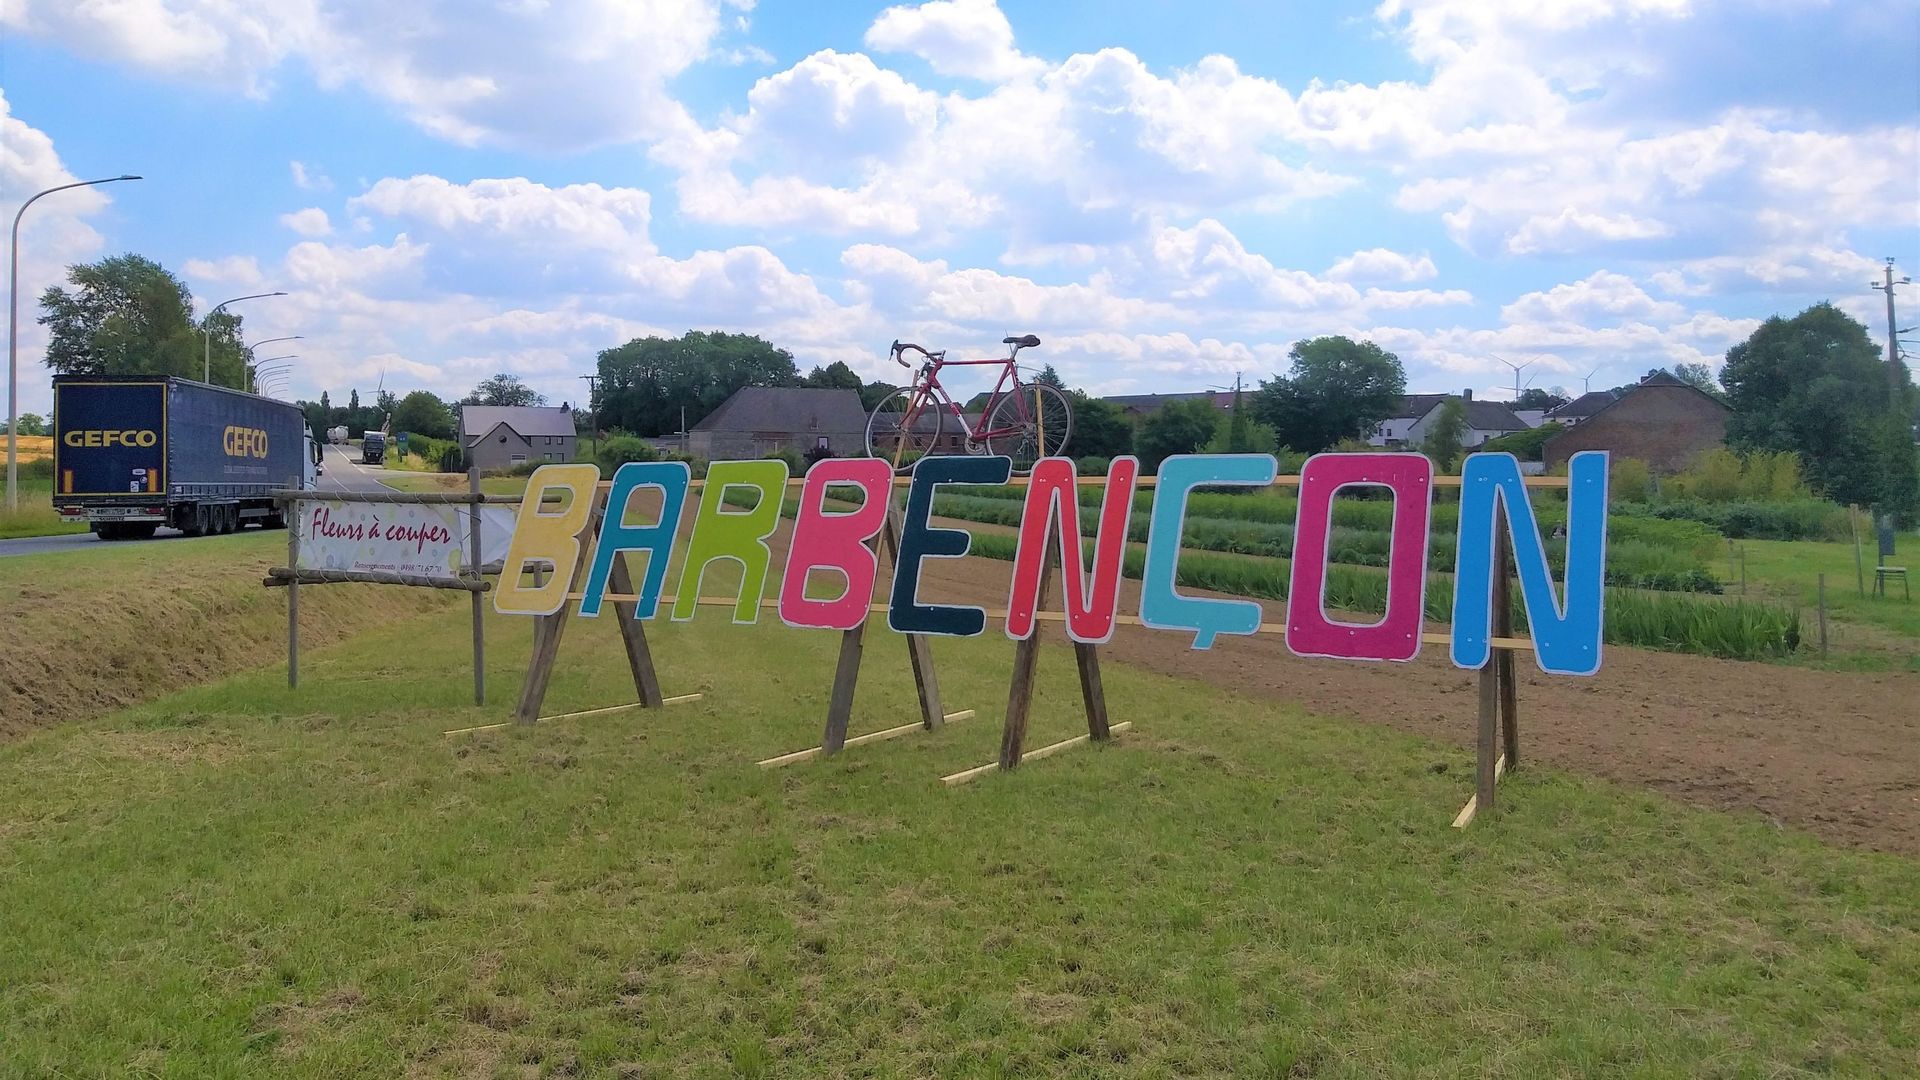 L'école du village de Barbençon a installé une inscription colorée à l'entrée du village.  